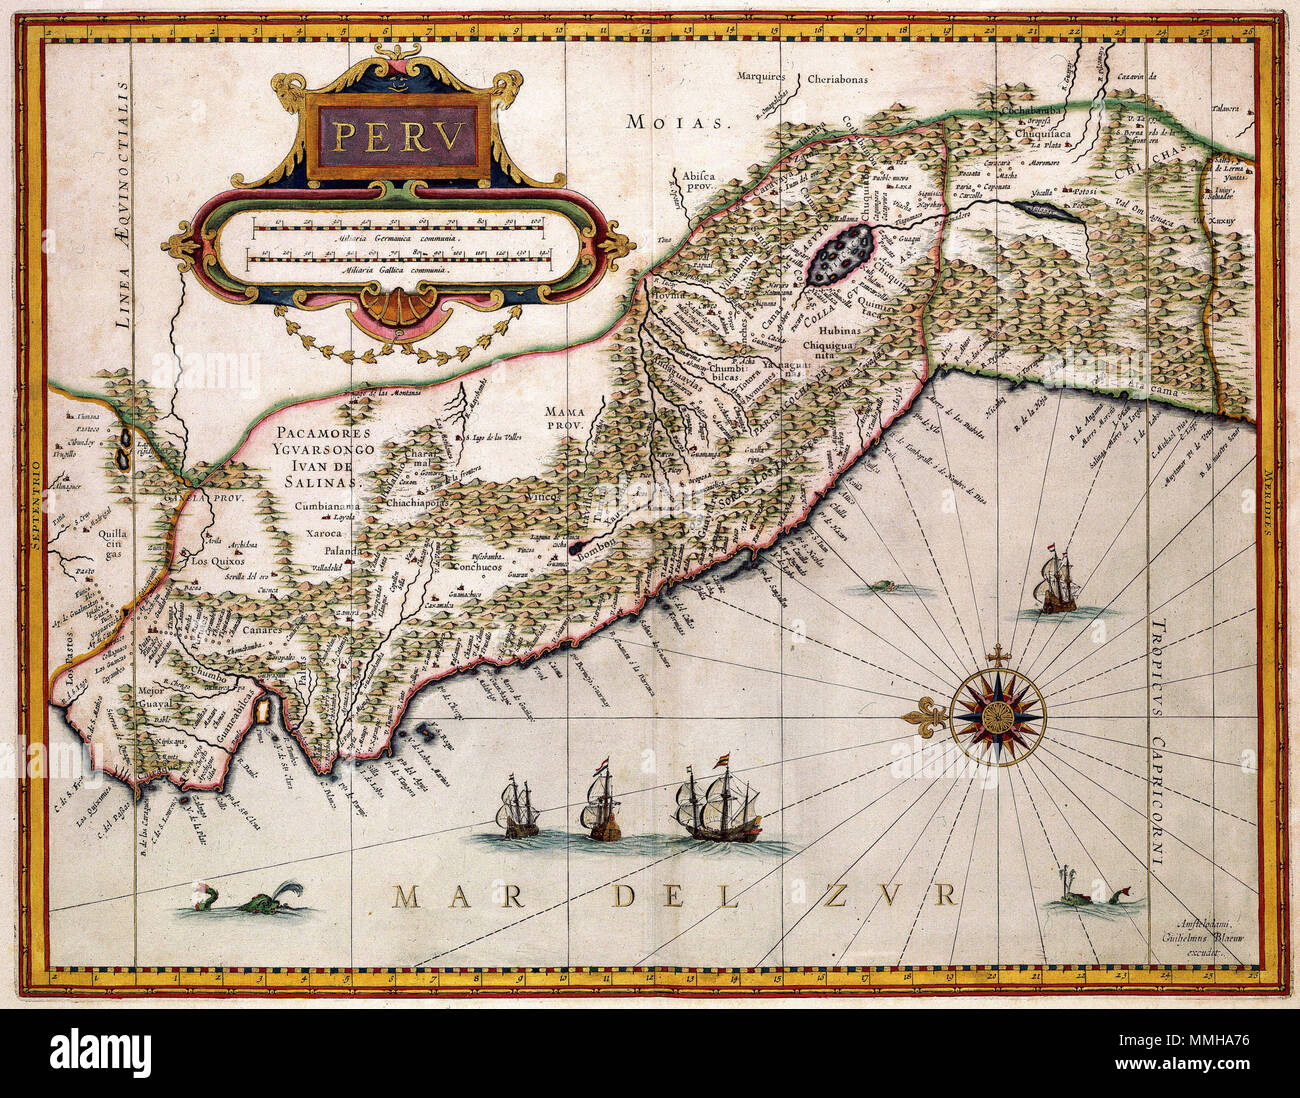 .  Nederlands: Willem Jansz. Blaeu (1571-1638) publiceerde deze kaart van Peru in 1630. De gegevens voor het samenstellen van deze kaart nam Blaeu over aan Joannes de Laets (1583-1649) Beschrijvinghe van West-Indien uit 1625. English: Willem Jansz. Blaeu (1571-1638) published this map of Peru in 1630. For this map, Blaeu used information from the 'Beschrijvinghe van West-Indien', a famous book by Joannes de Laet (1583-1649) published in 1625.  PERV. 1630. Atlas Van der Hagen-KW1049B13 088-PERV Stock Photo